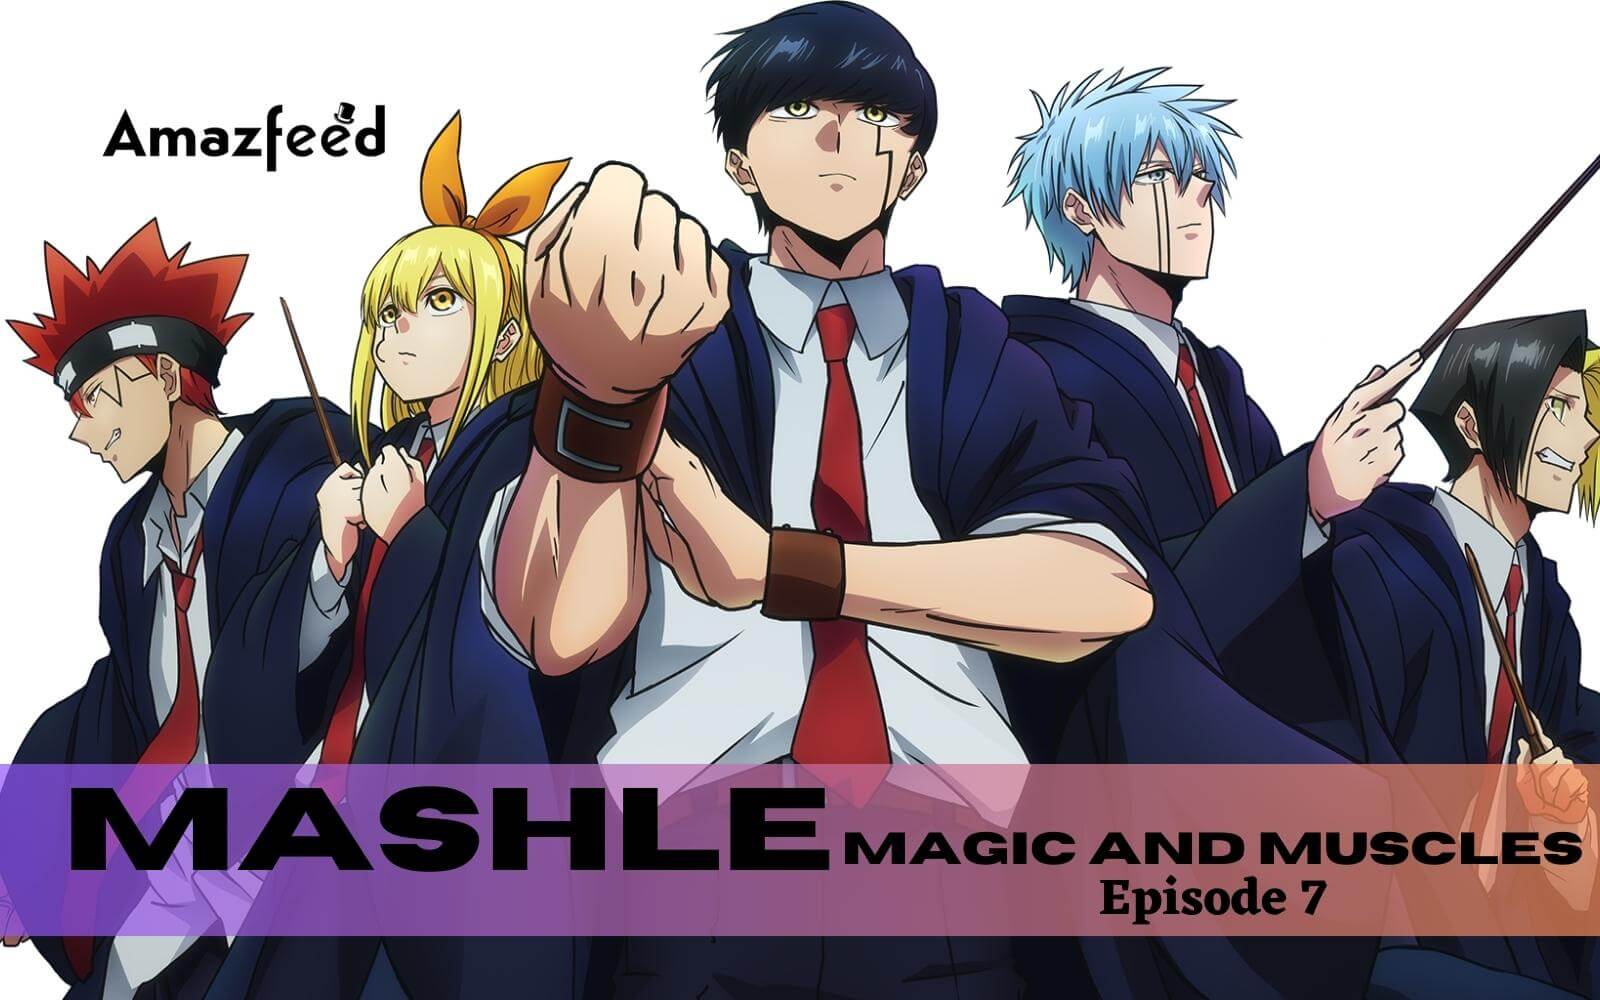 Mashle Dublado - Episódio 7 - Animes Online